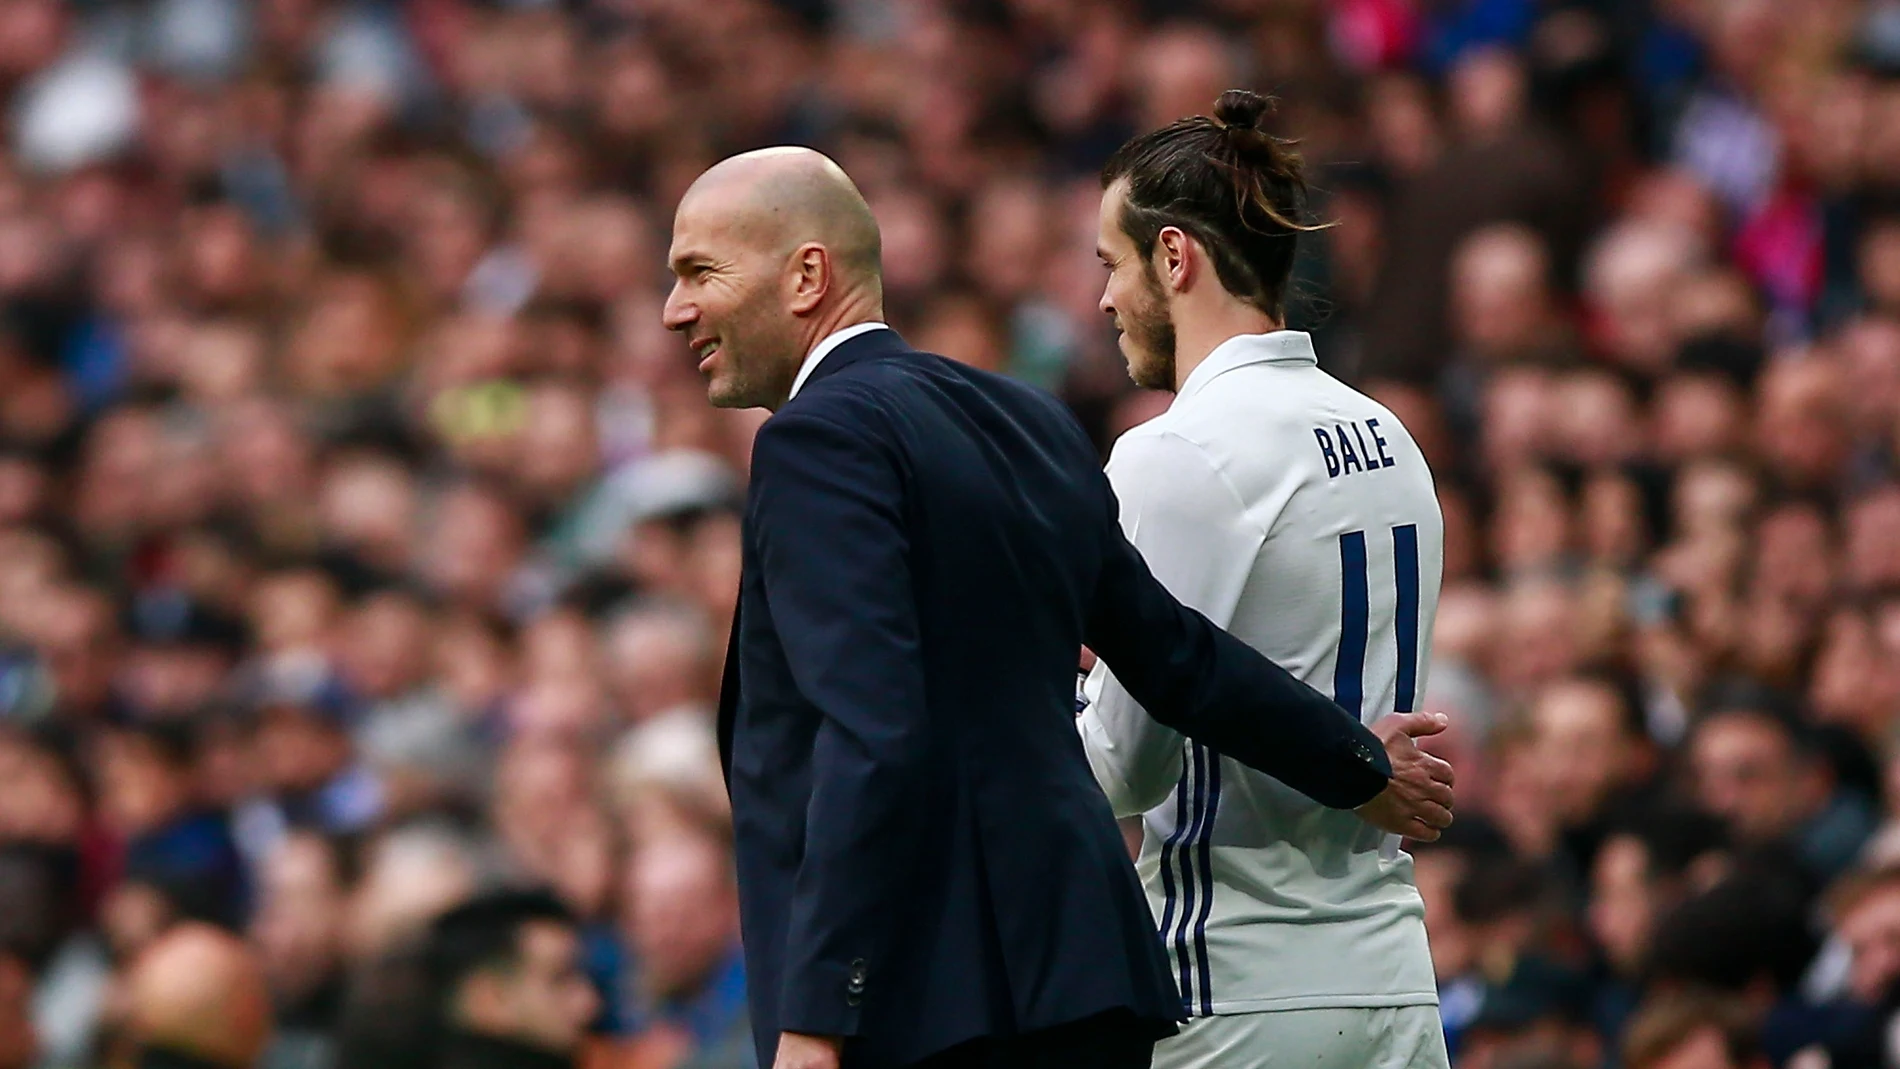 Zidane conversa con Bale antes de que el galés salte al campo